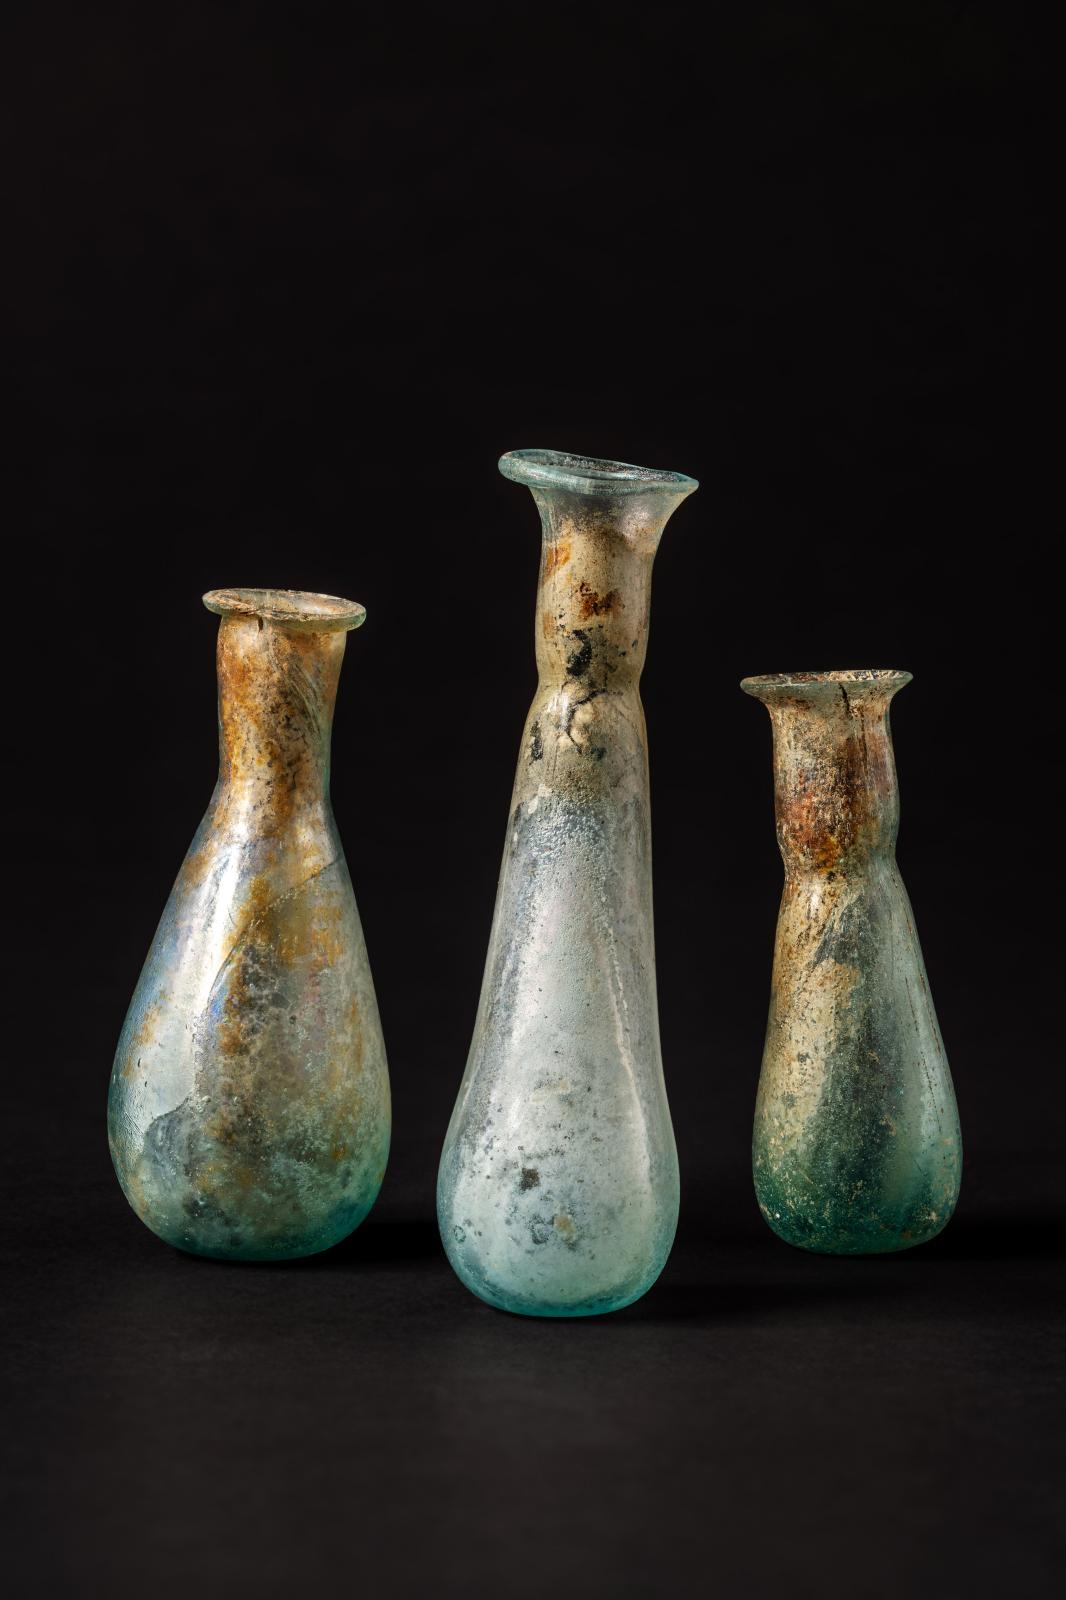 Balsamaires en verre, découverts dans une nécropole antique à Narbonne. © Denis Gliksman, Inrap 